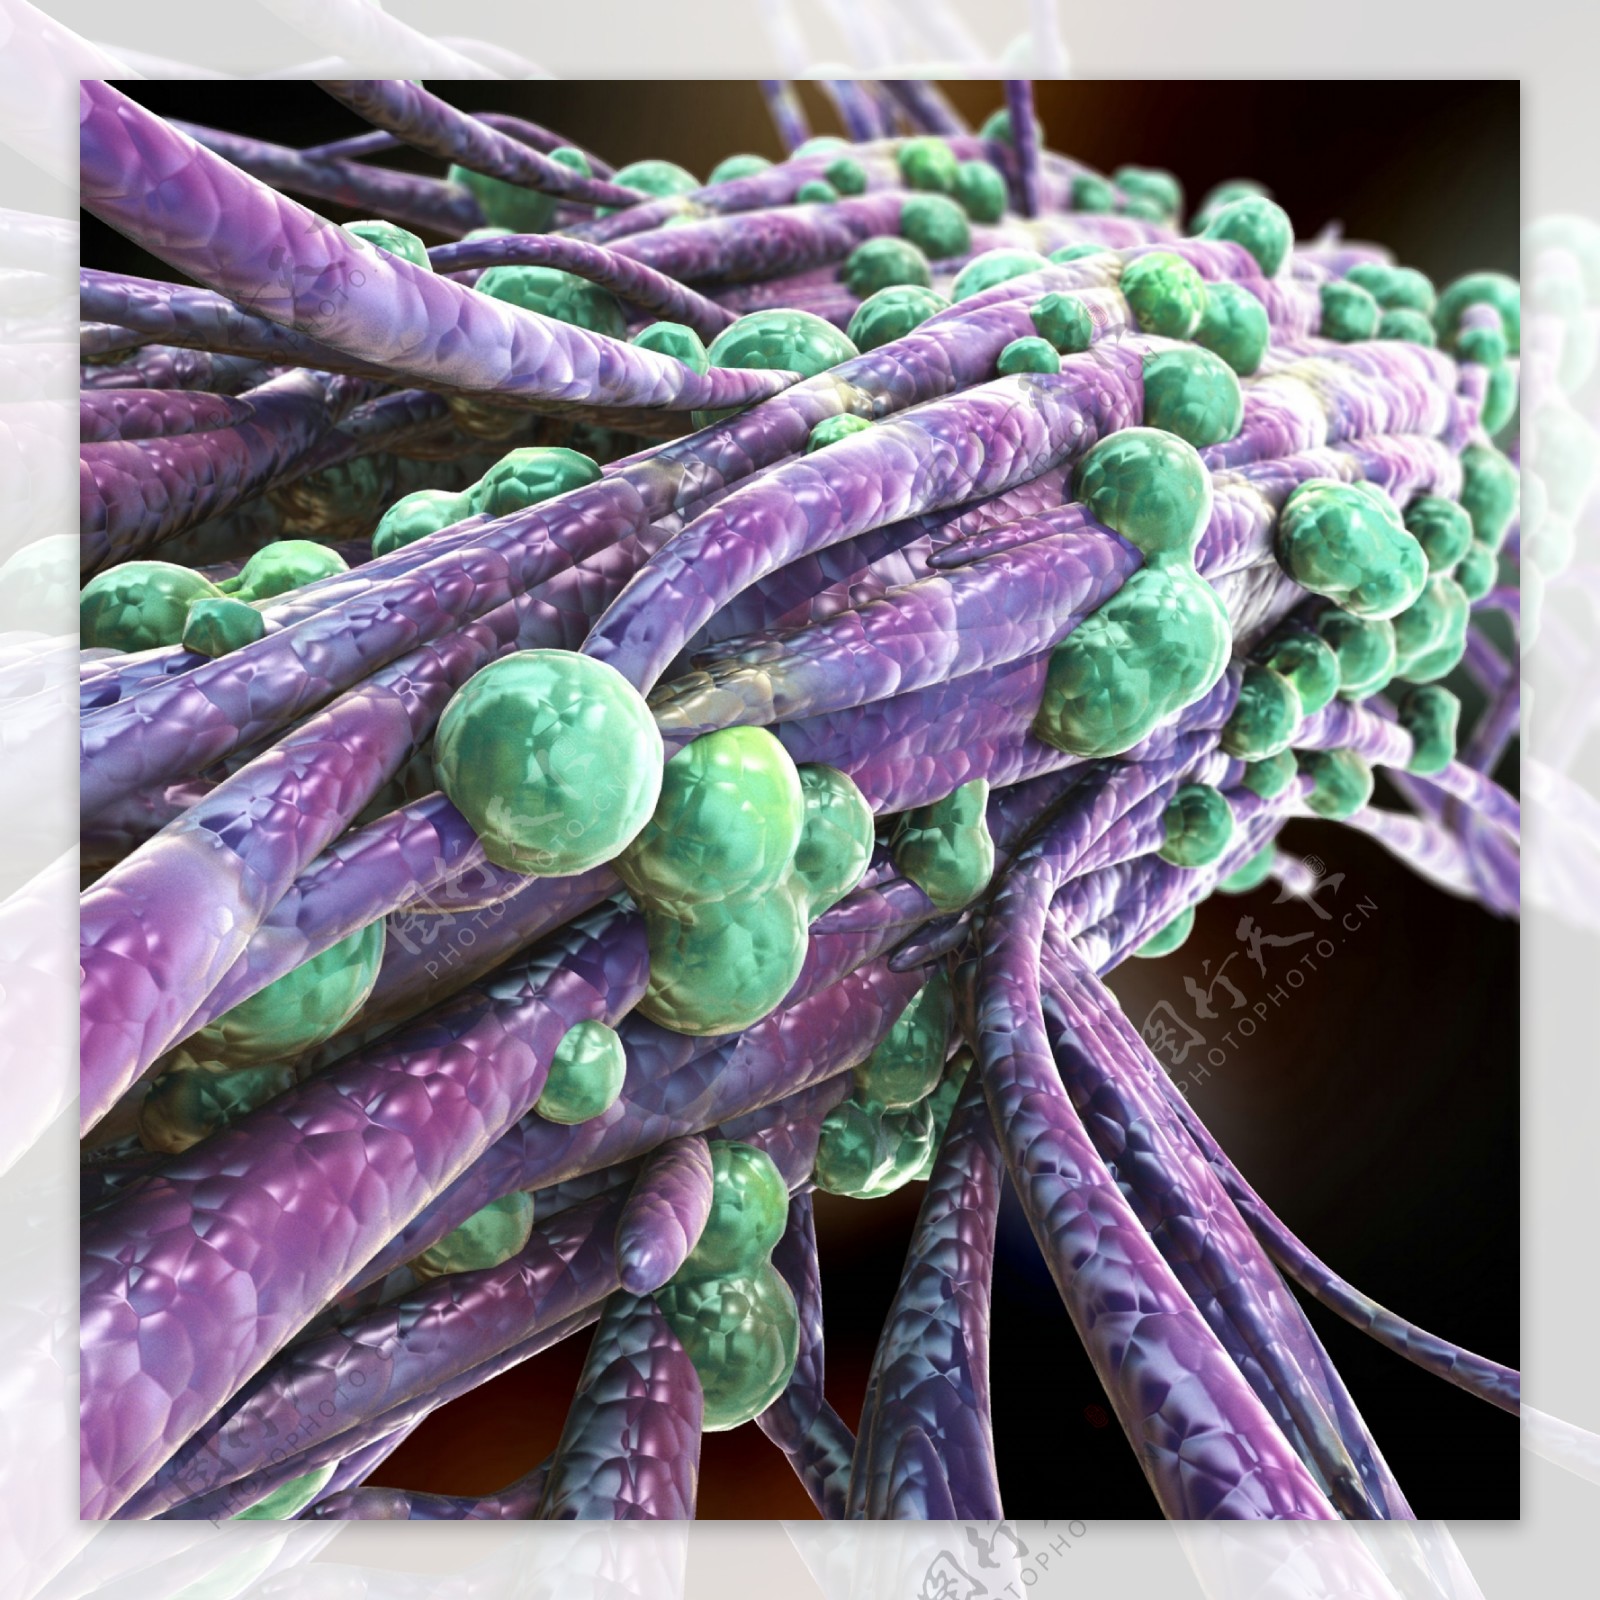 血管表面的细菌图片